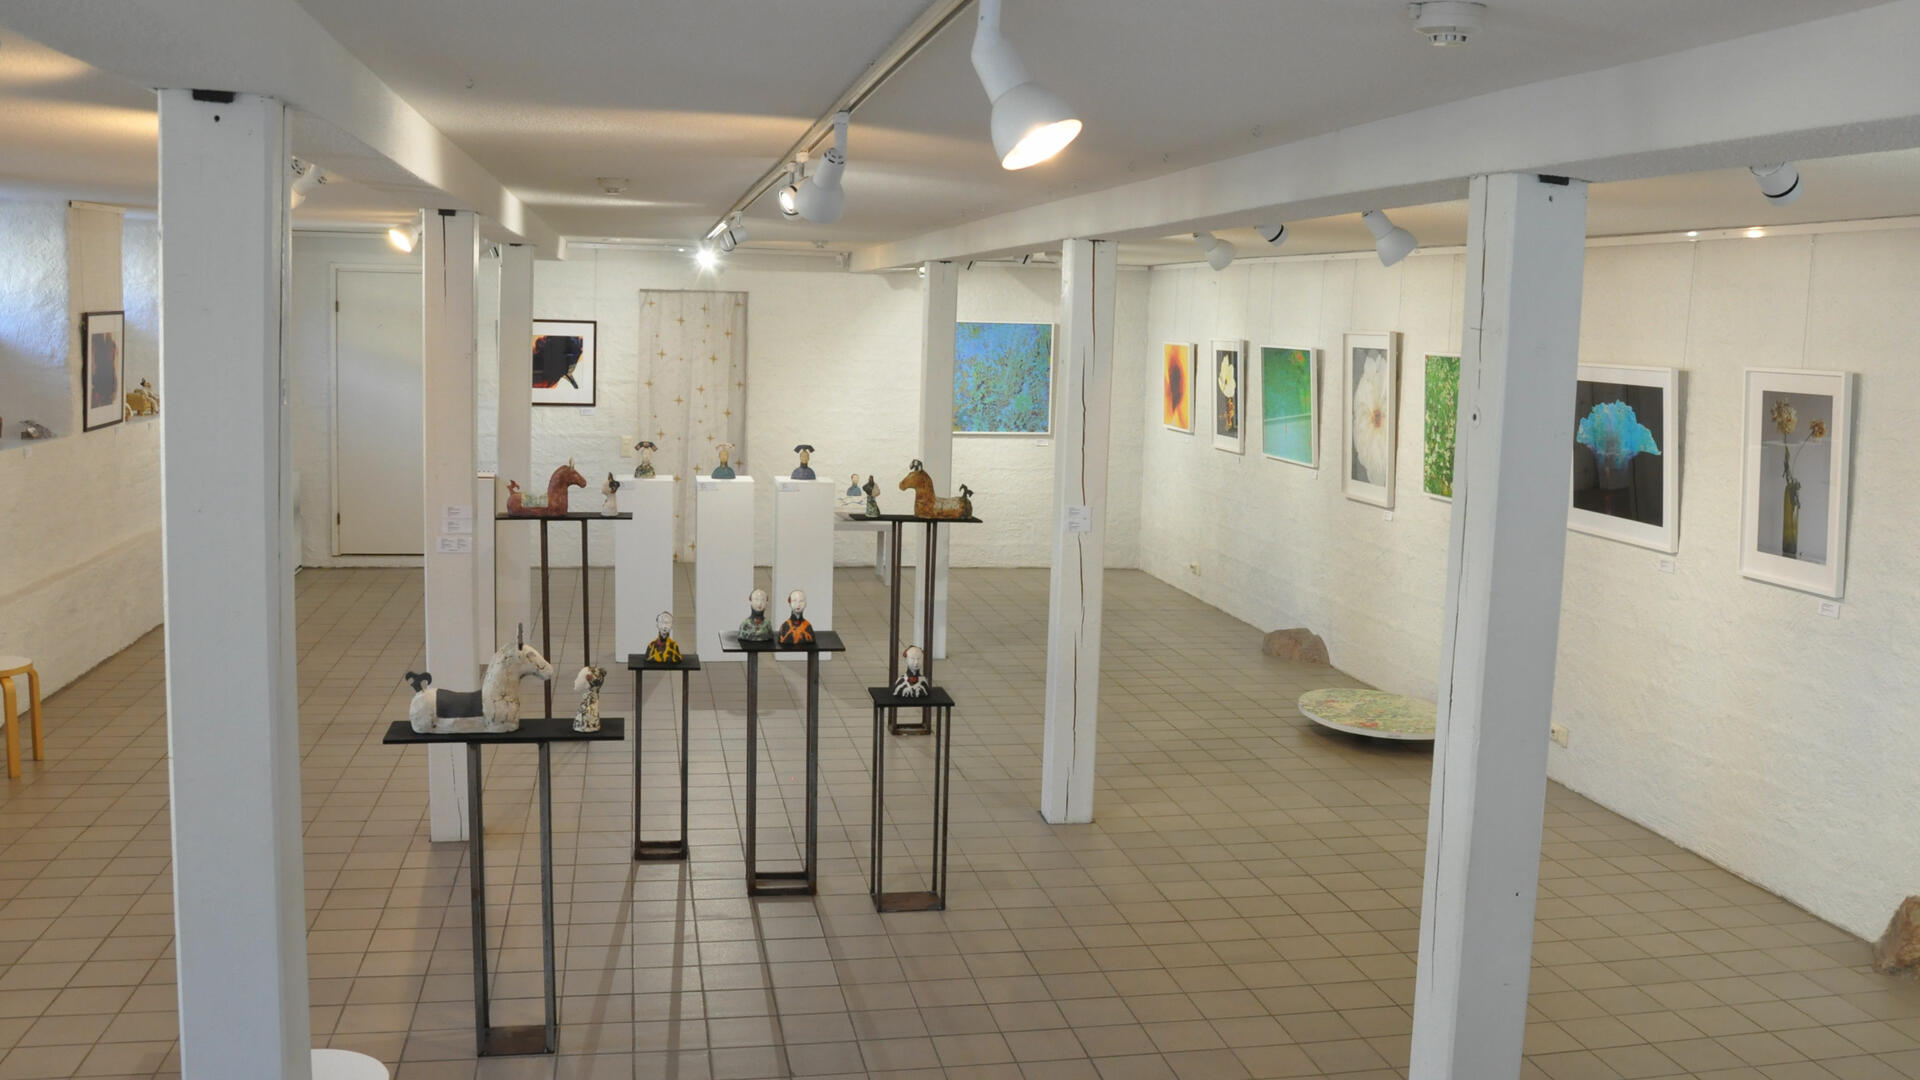 galleriatila jossa näkyy kuvia seinillä ja veistosjalustoilla pienoisveistoksia